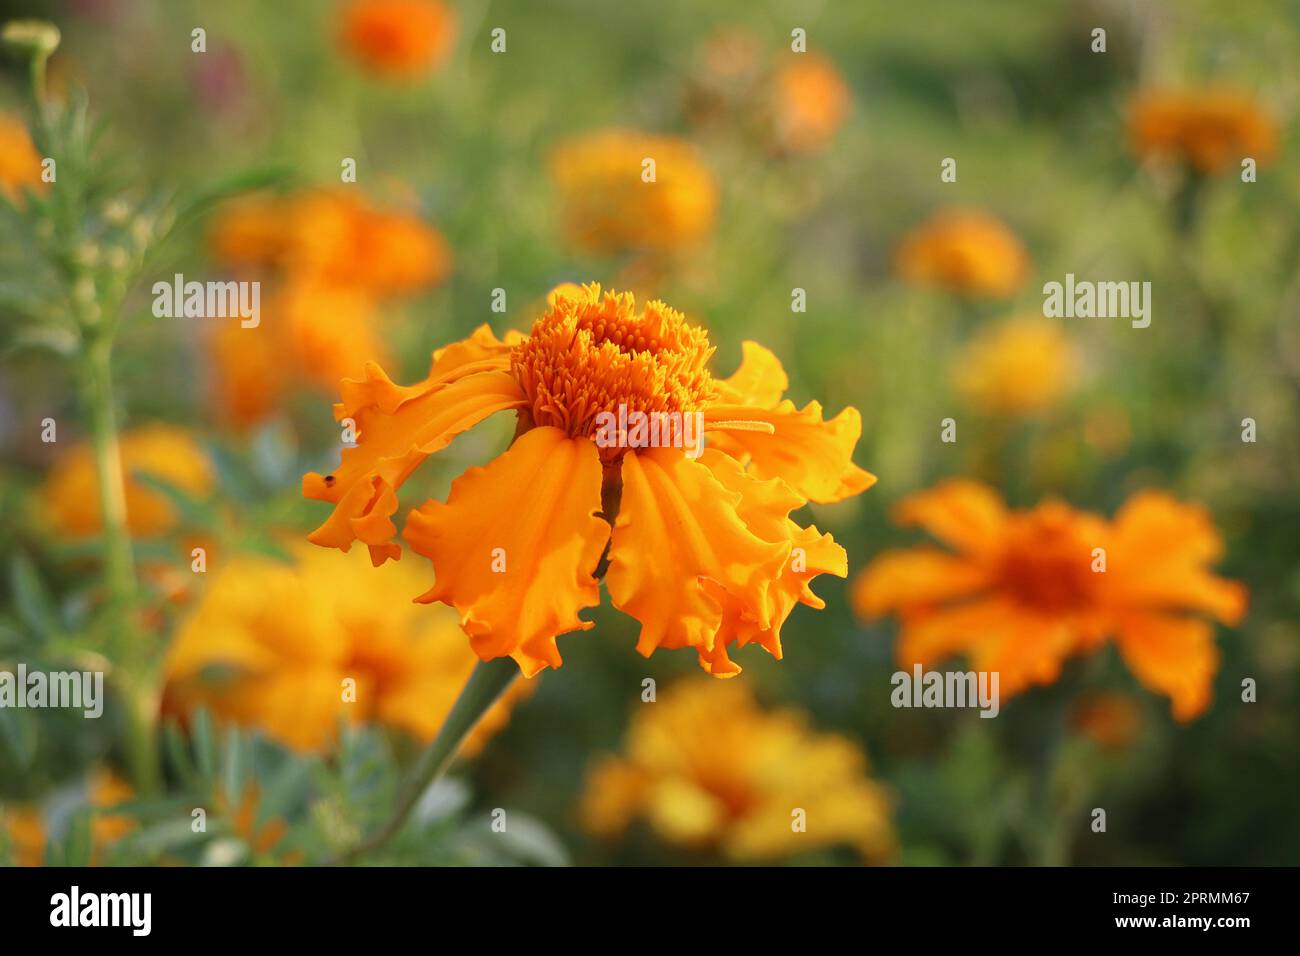 Marigold-Blumen. Tagetes Blumen auf der Wiese im Sonnenlicht. Gelbe und orangefarbene Marigoldblumen im Garten Stockfoto